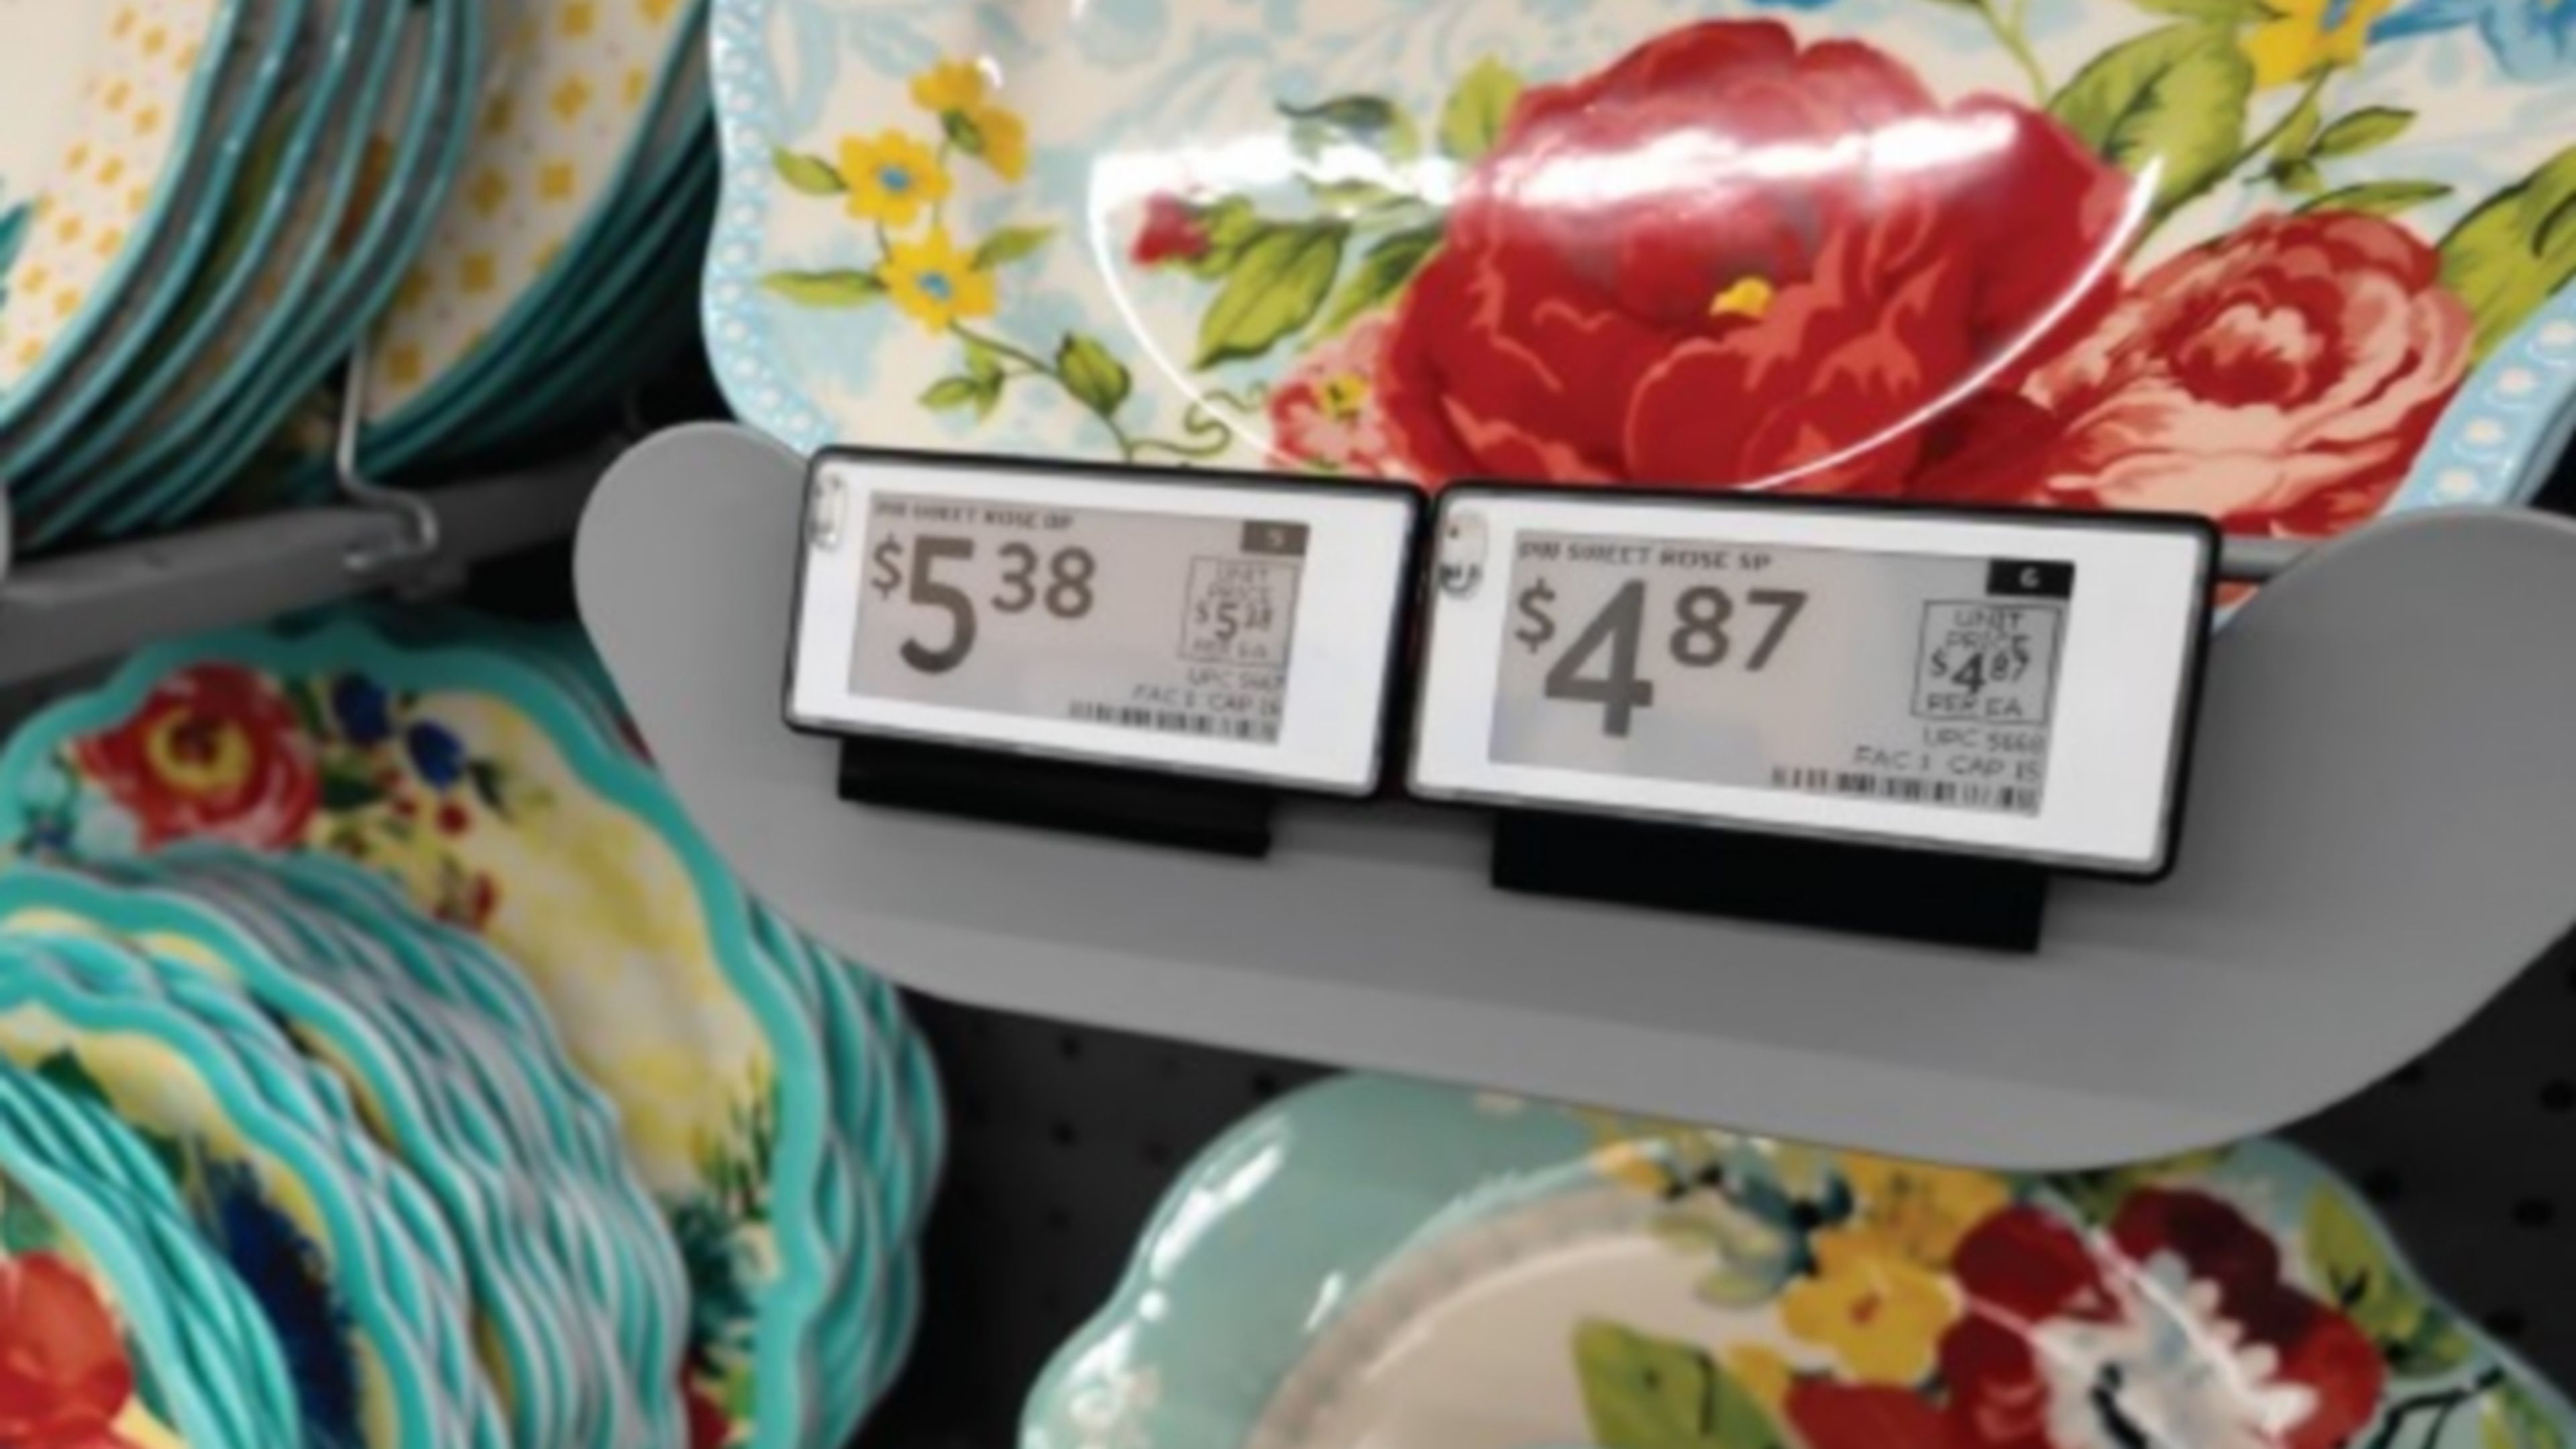 Llegan las etiquetas de precios digitales a los supermercados, y no son buenas noticias para los consumidores